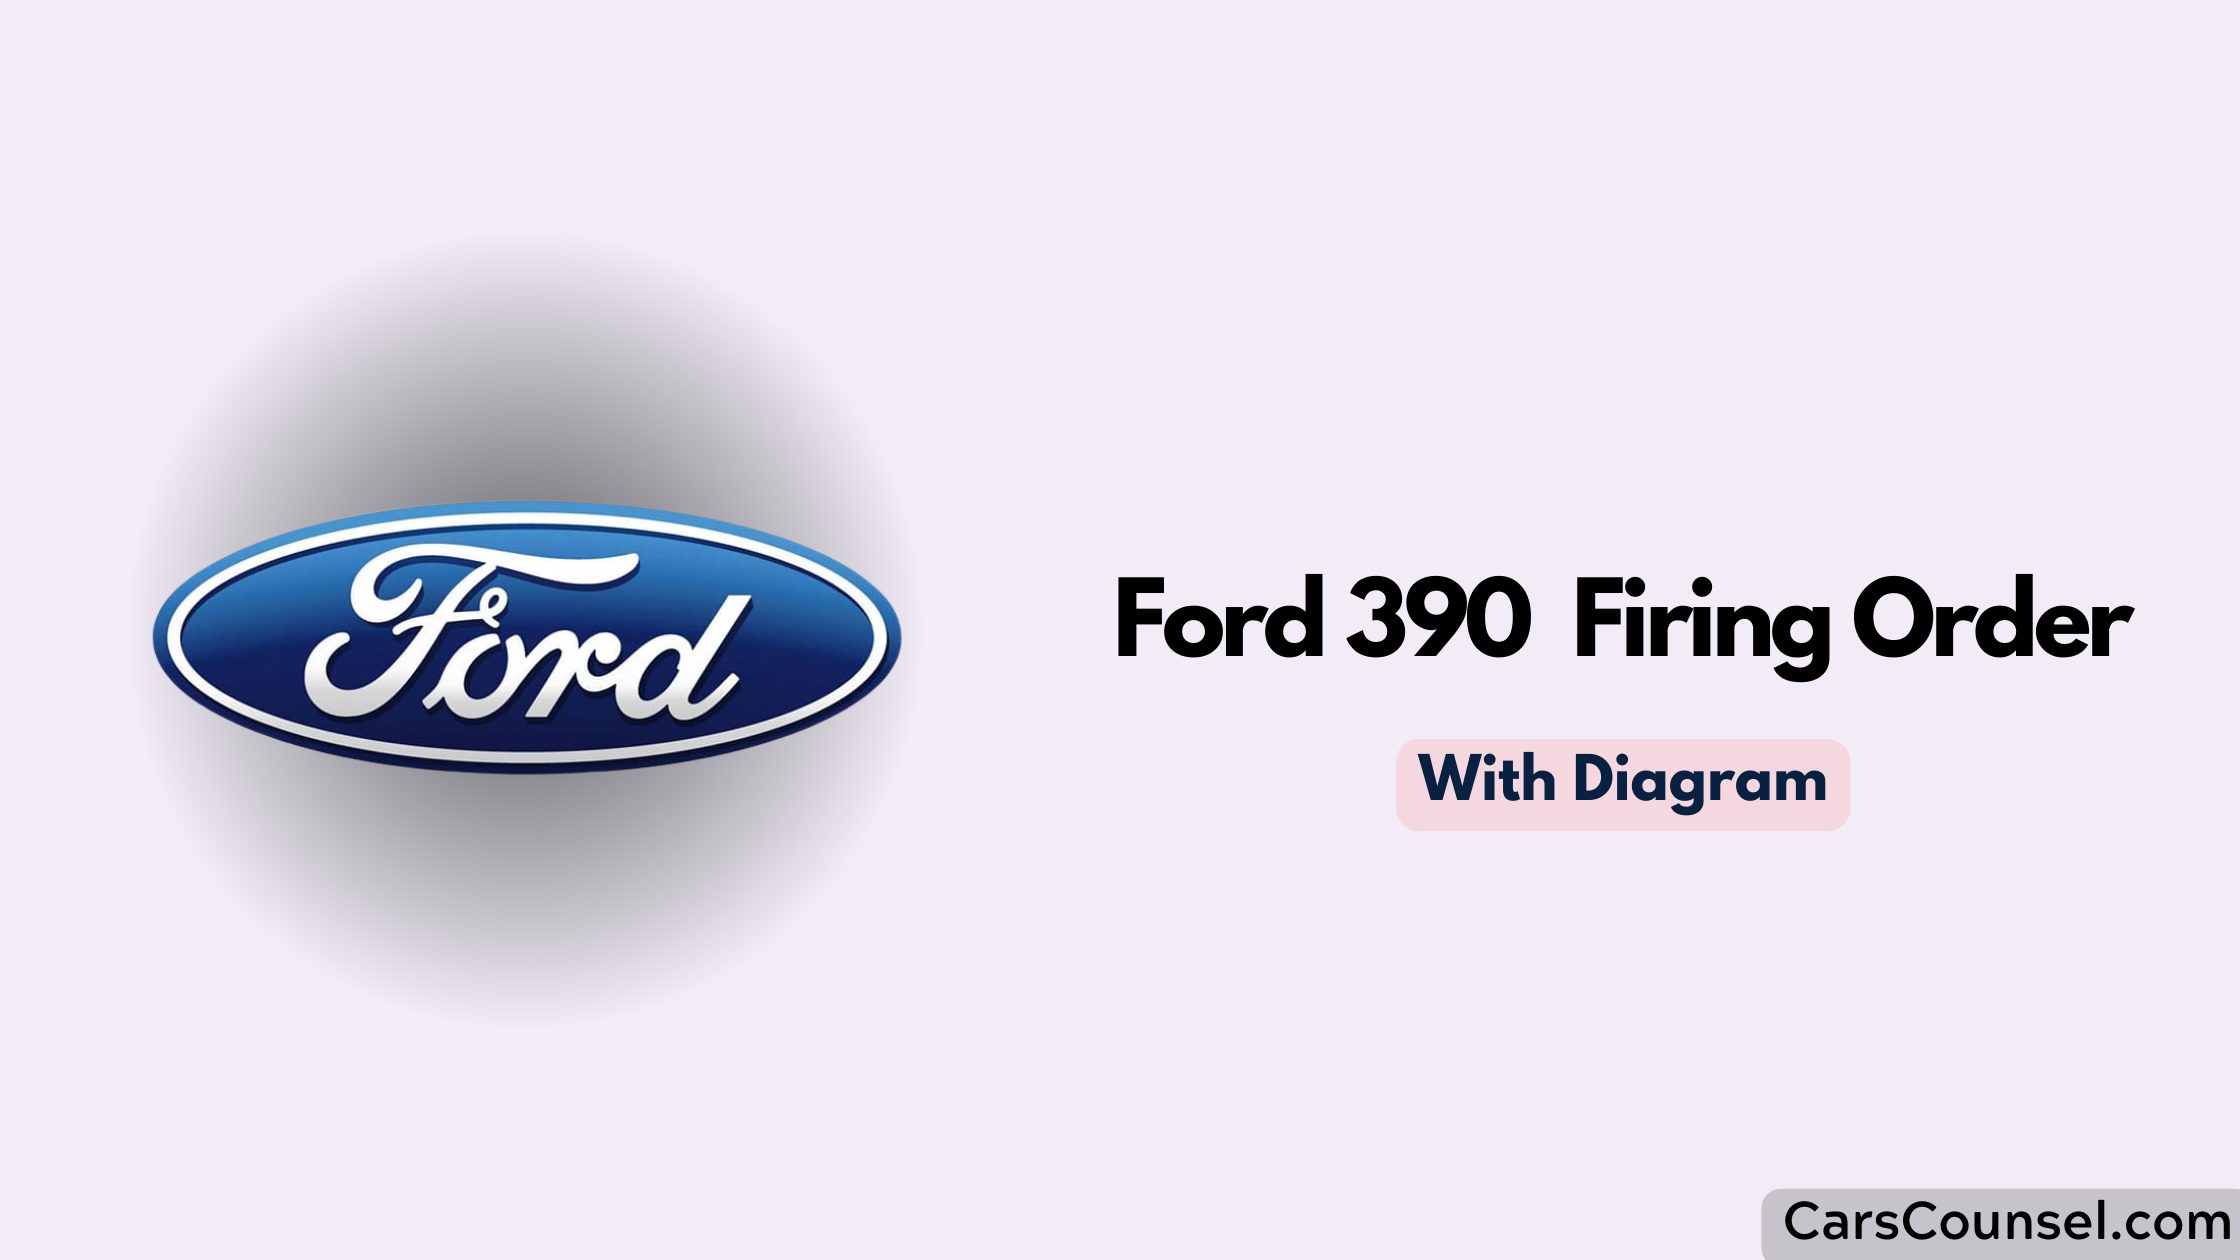 Ford 390 Firing Order